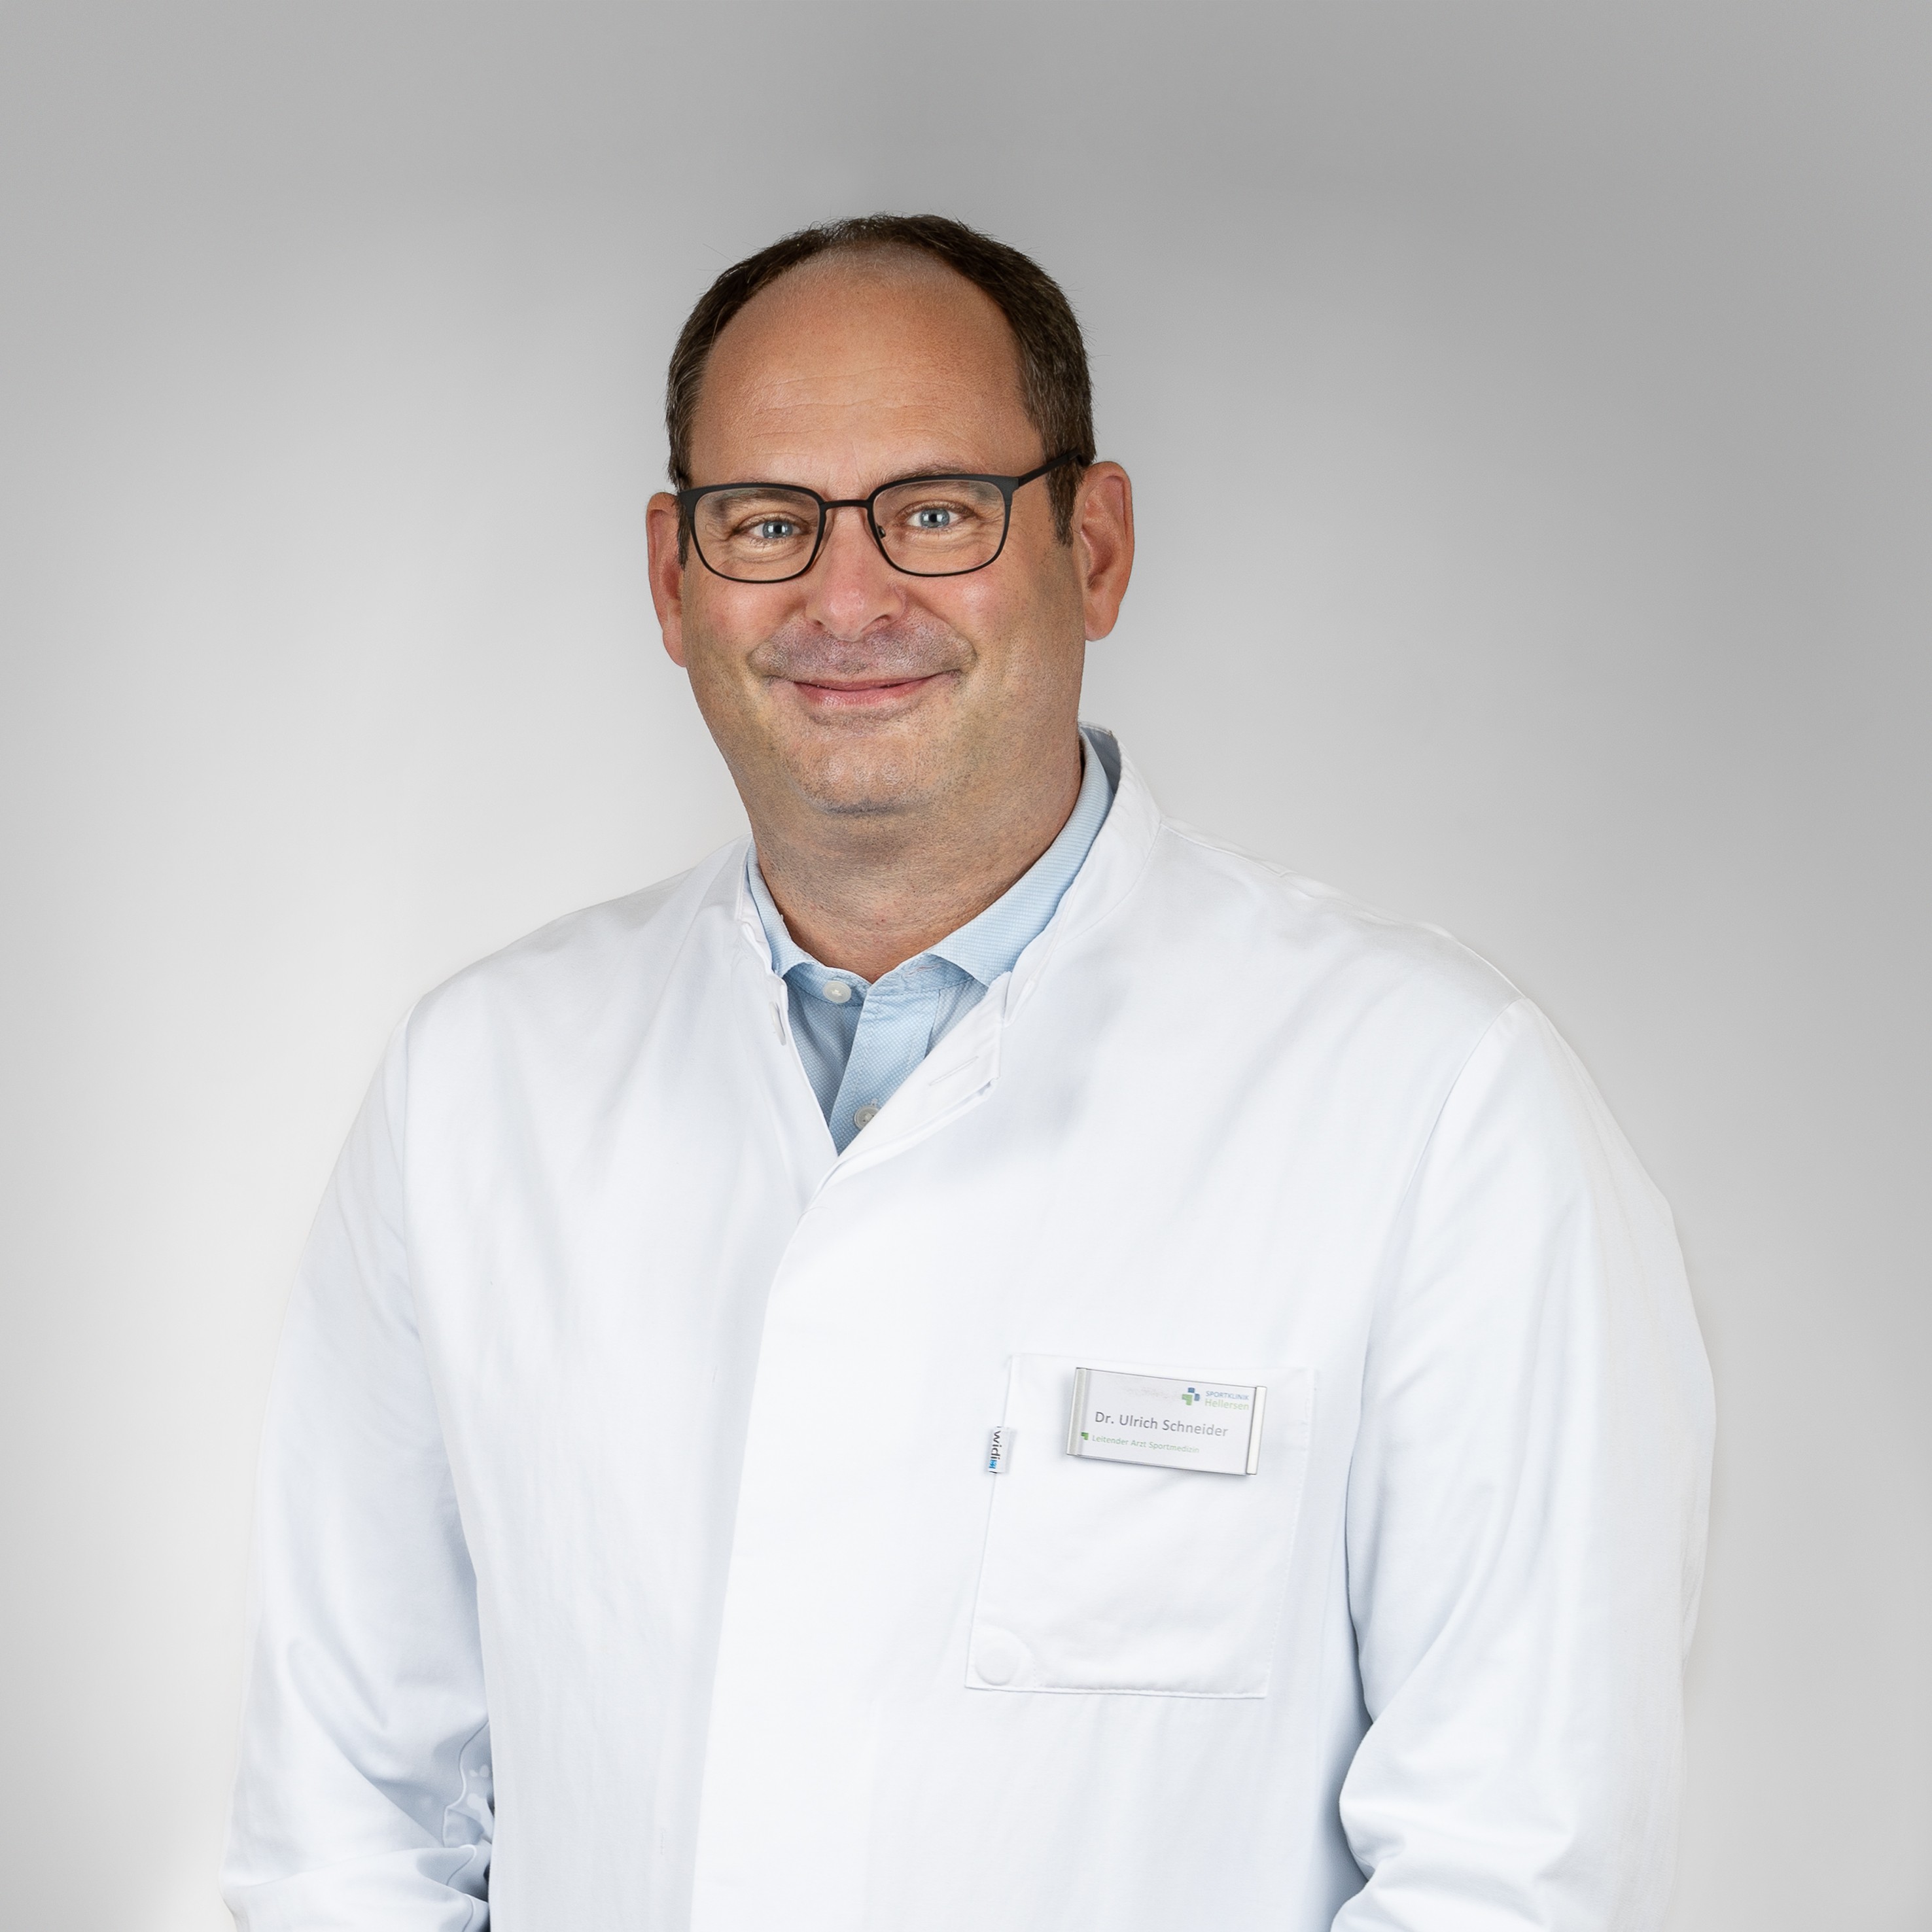 Dr. Ulrich Schneider, Leitender Arzt Sportmedizin, wurde für den Bereich Sportmedizin ausgezeichnet. von Sportklinik Hellersen